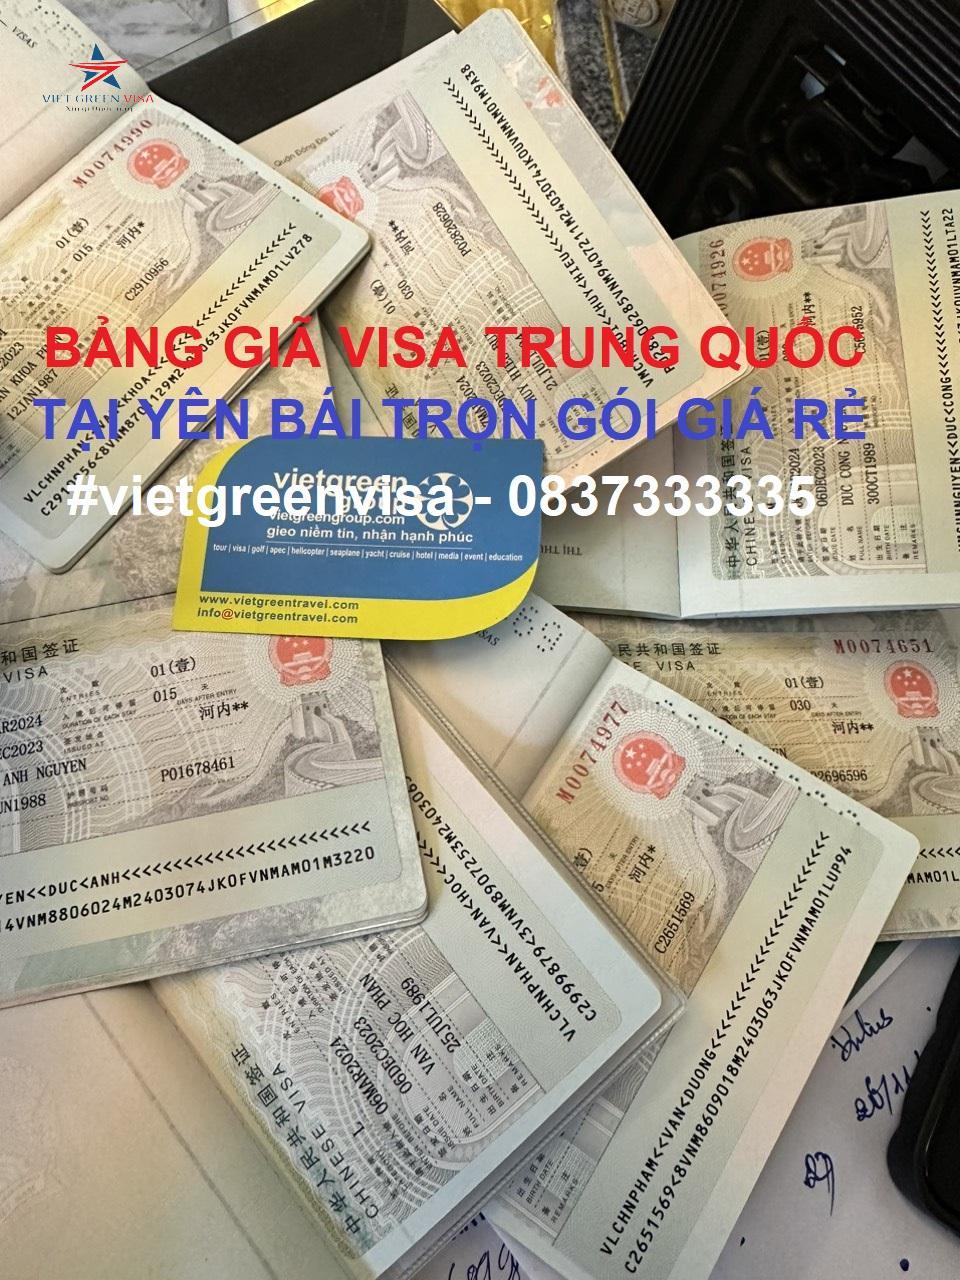 Dịch vụ xin visa Trung Quốc tại Yên Bái Nhanh Nhất